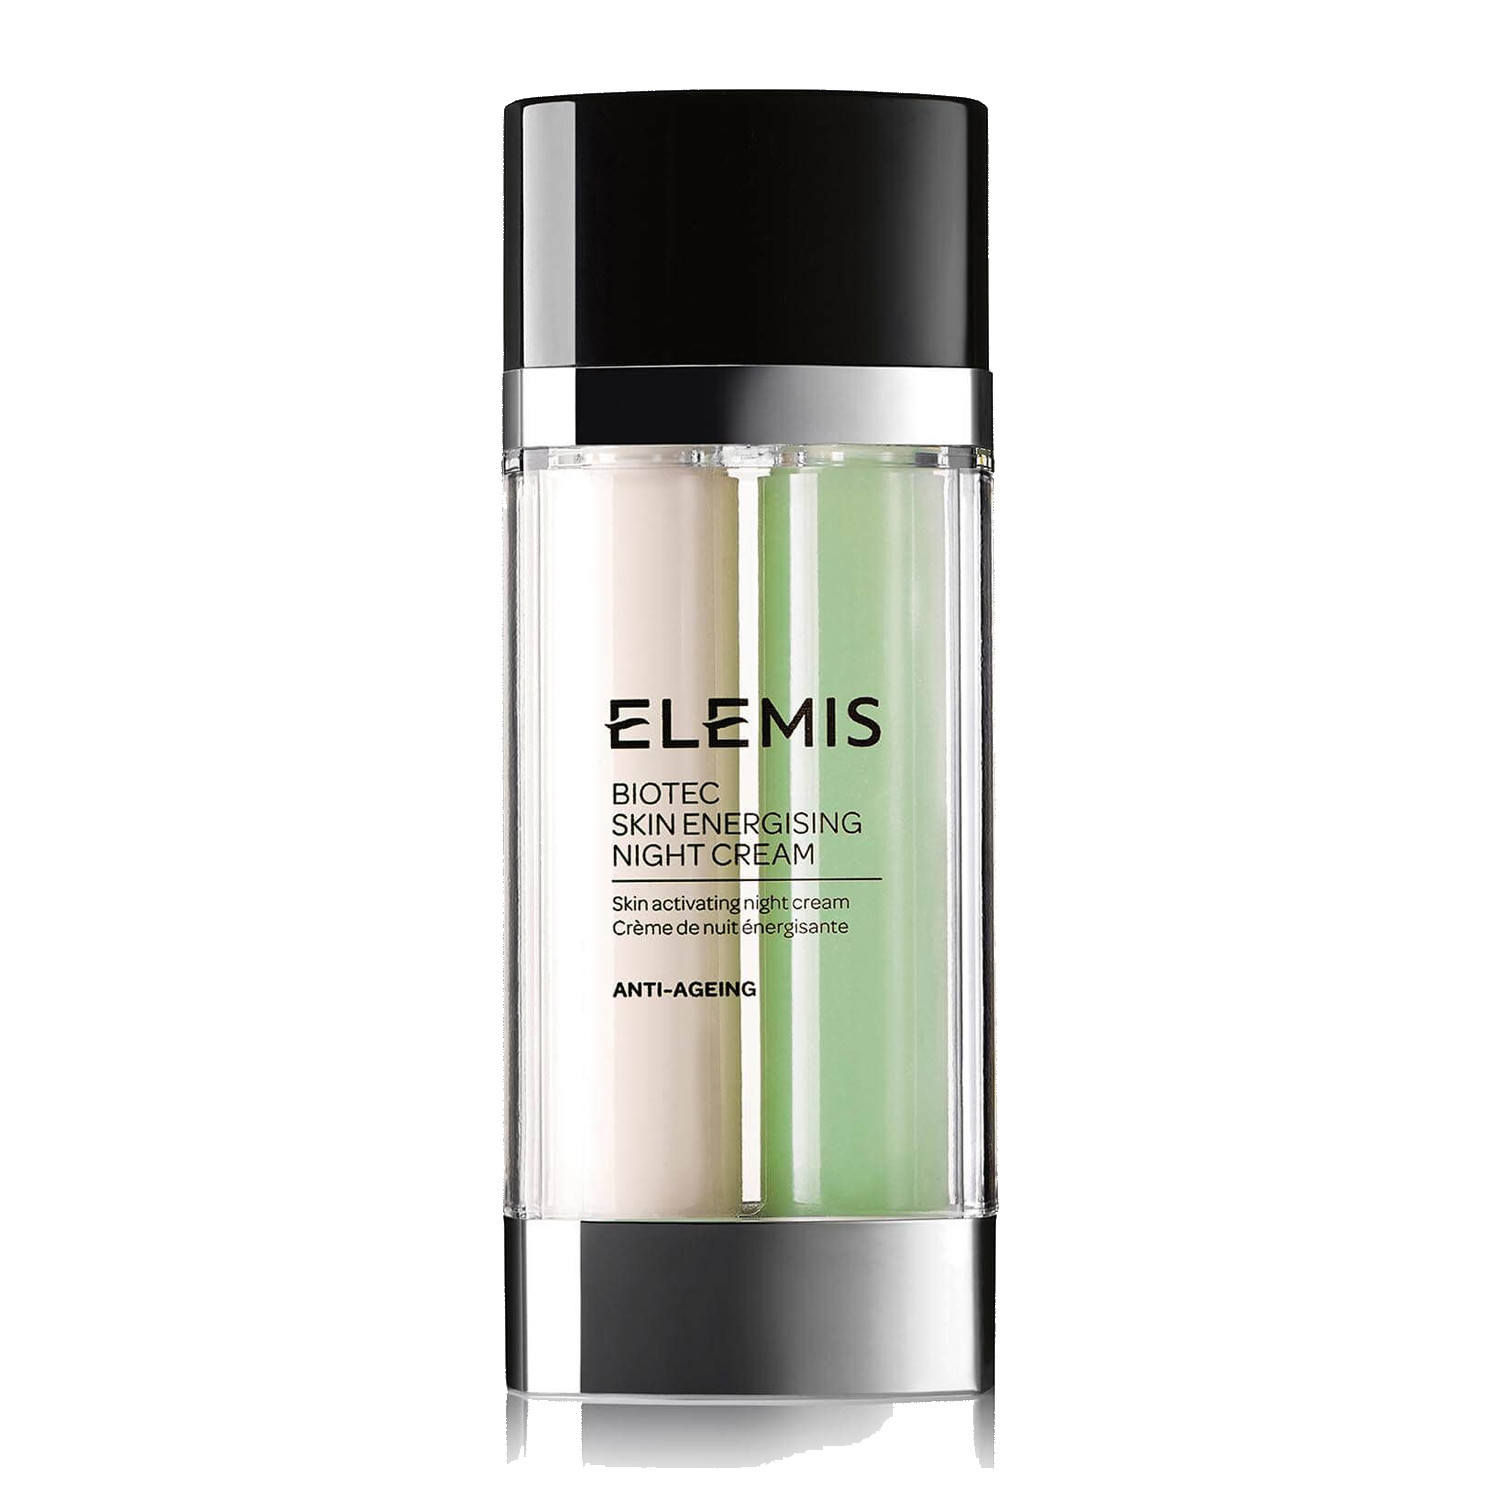 Elelmis Biotec Skin Energising Night Cream Нічний крем "БІОТЕК Активатор Енергії"